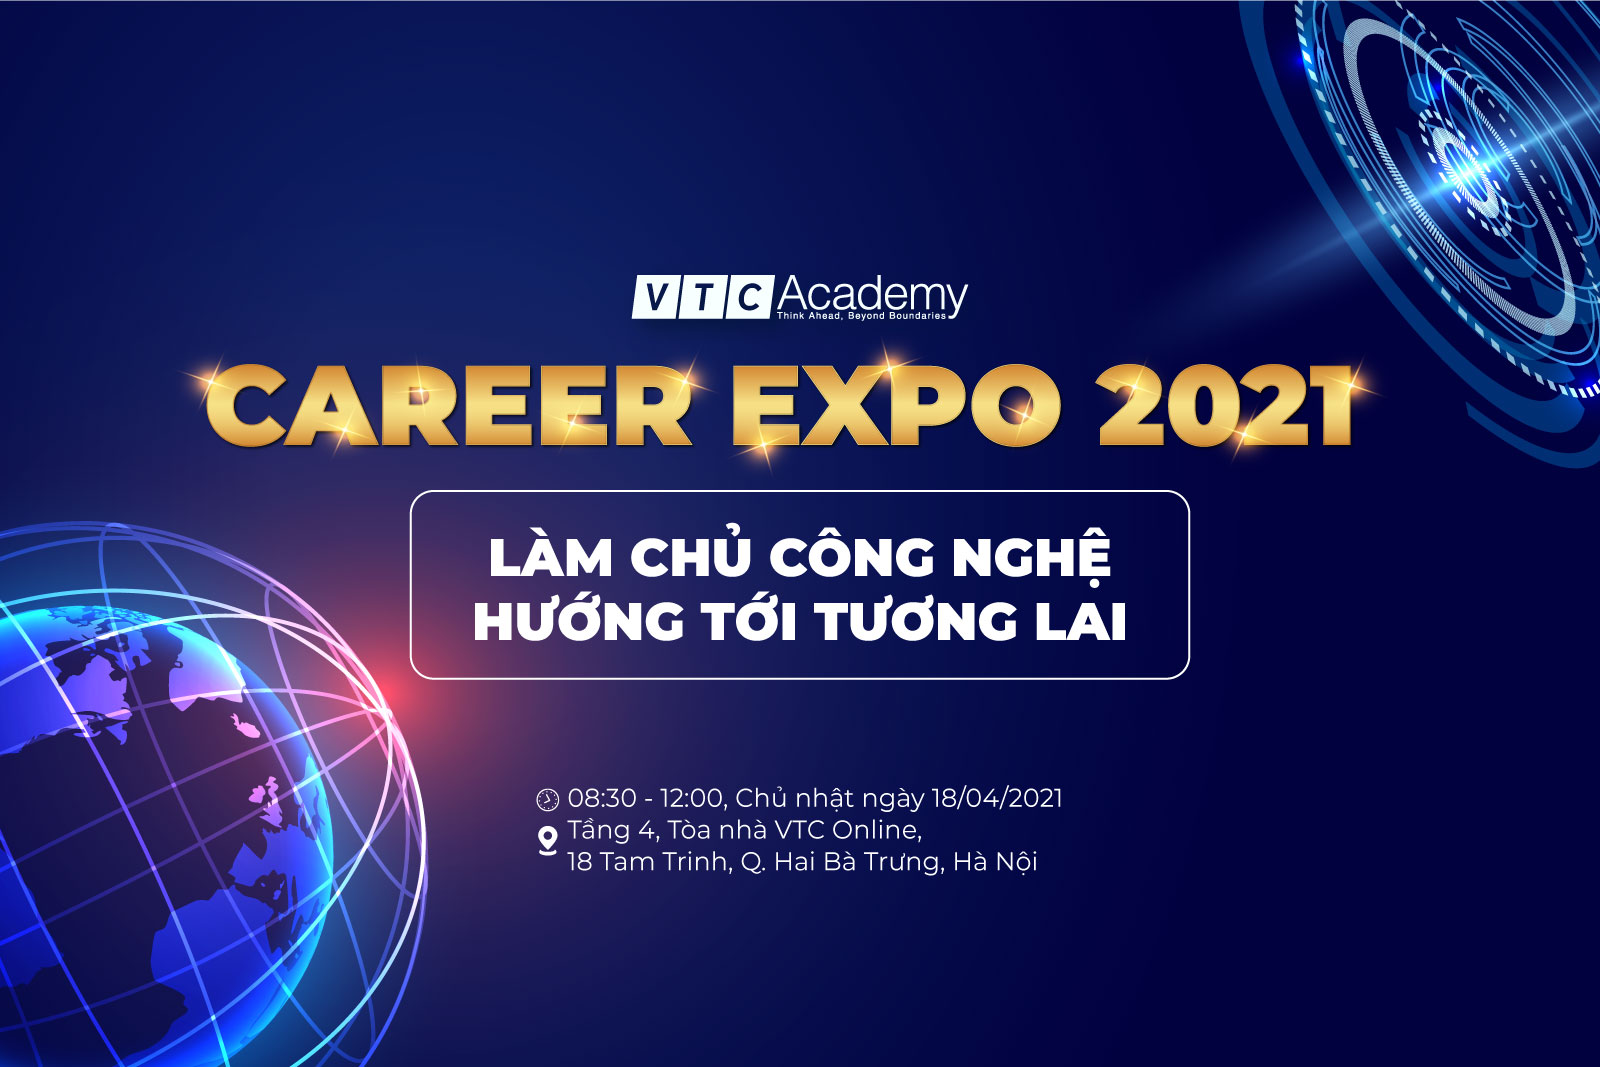 Ngày hội tuyển dụng “VTC Academy Career Expo 2021” tại Hà Nội